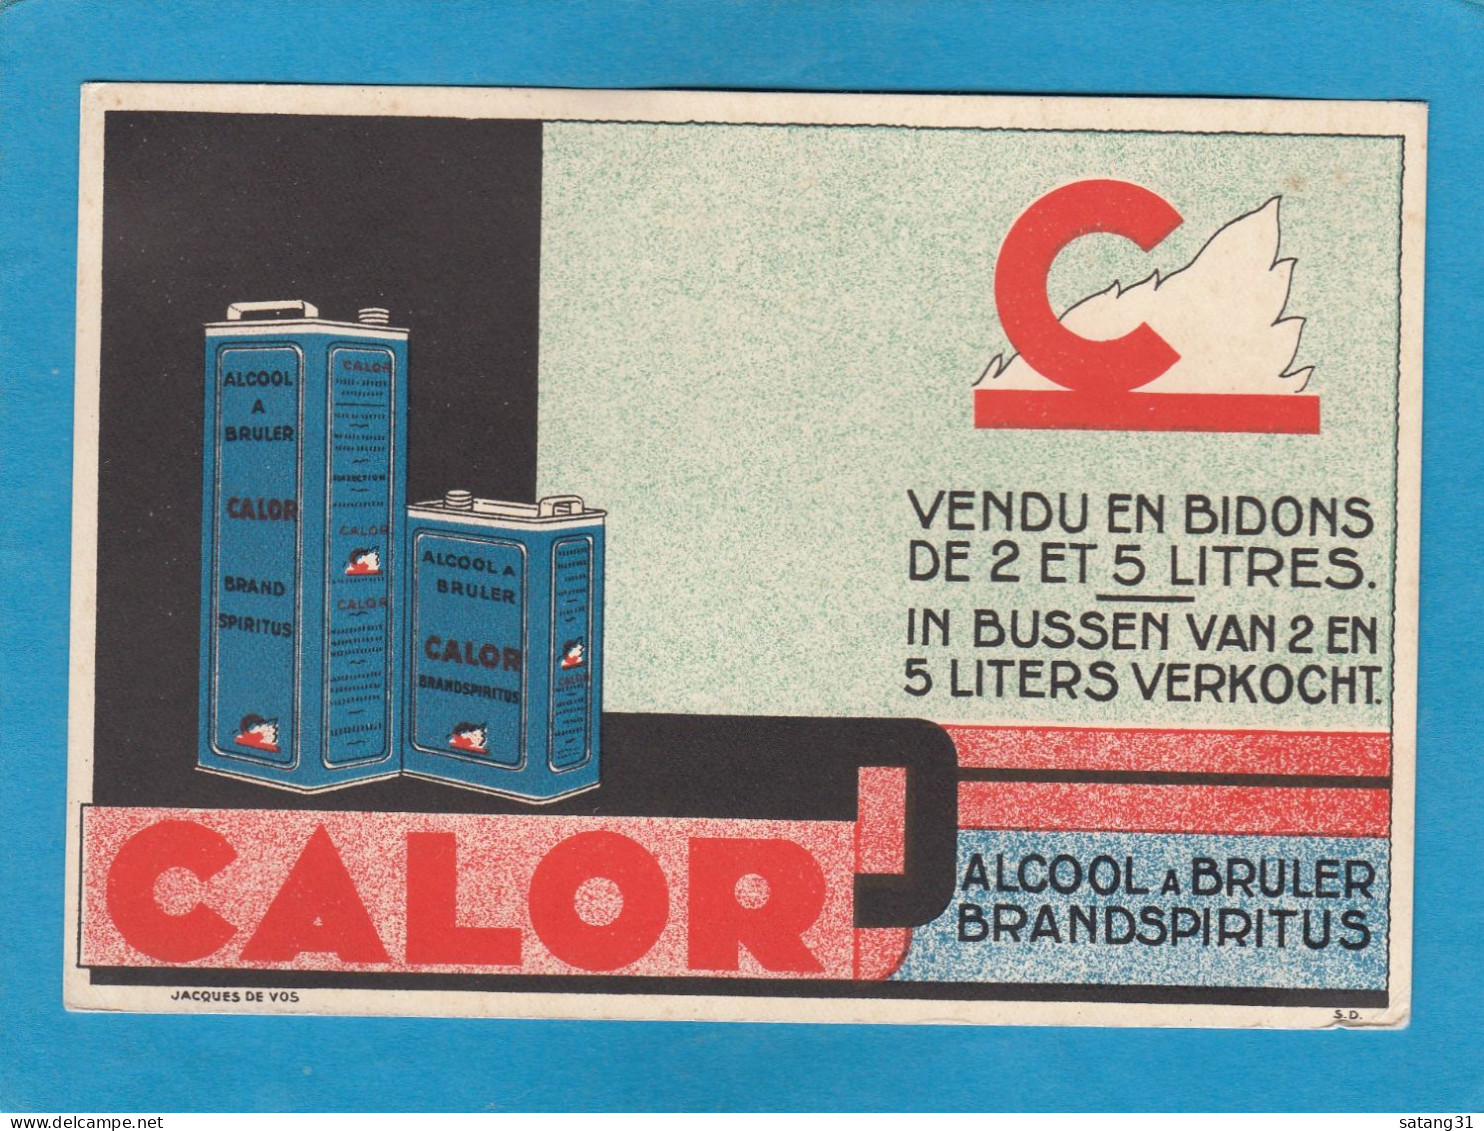 CALOR, ALCOOL A BRULER / BRANDSPIRITUS, - Reclame